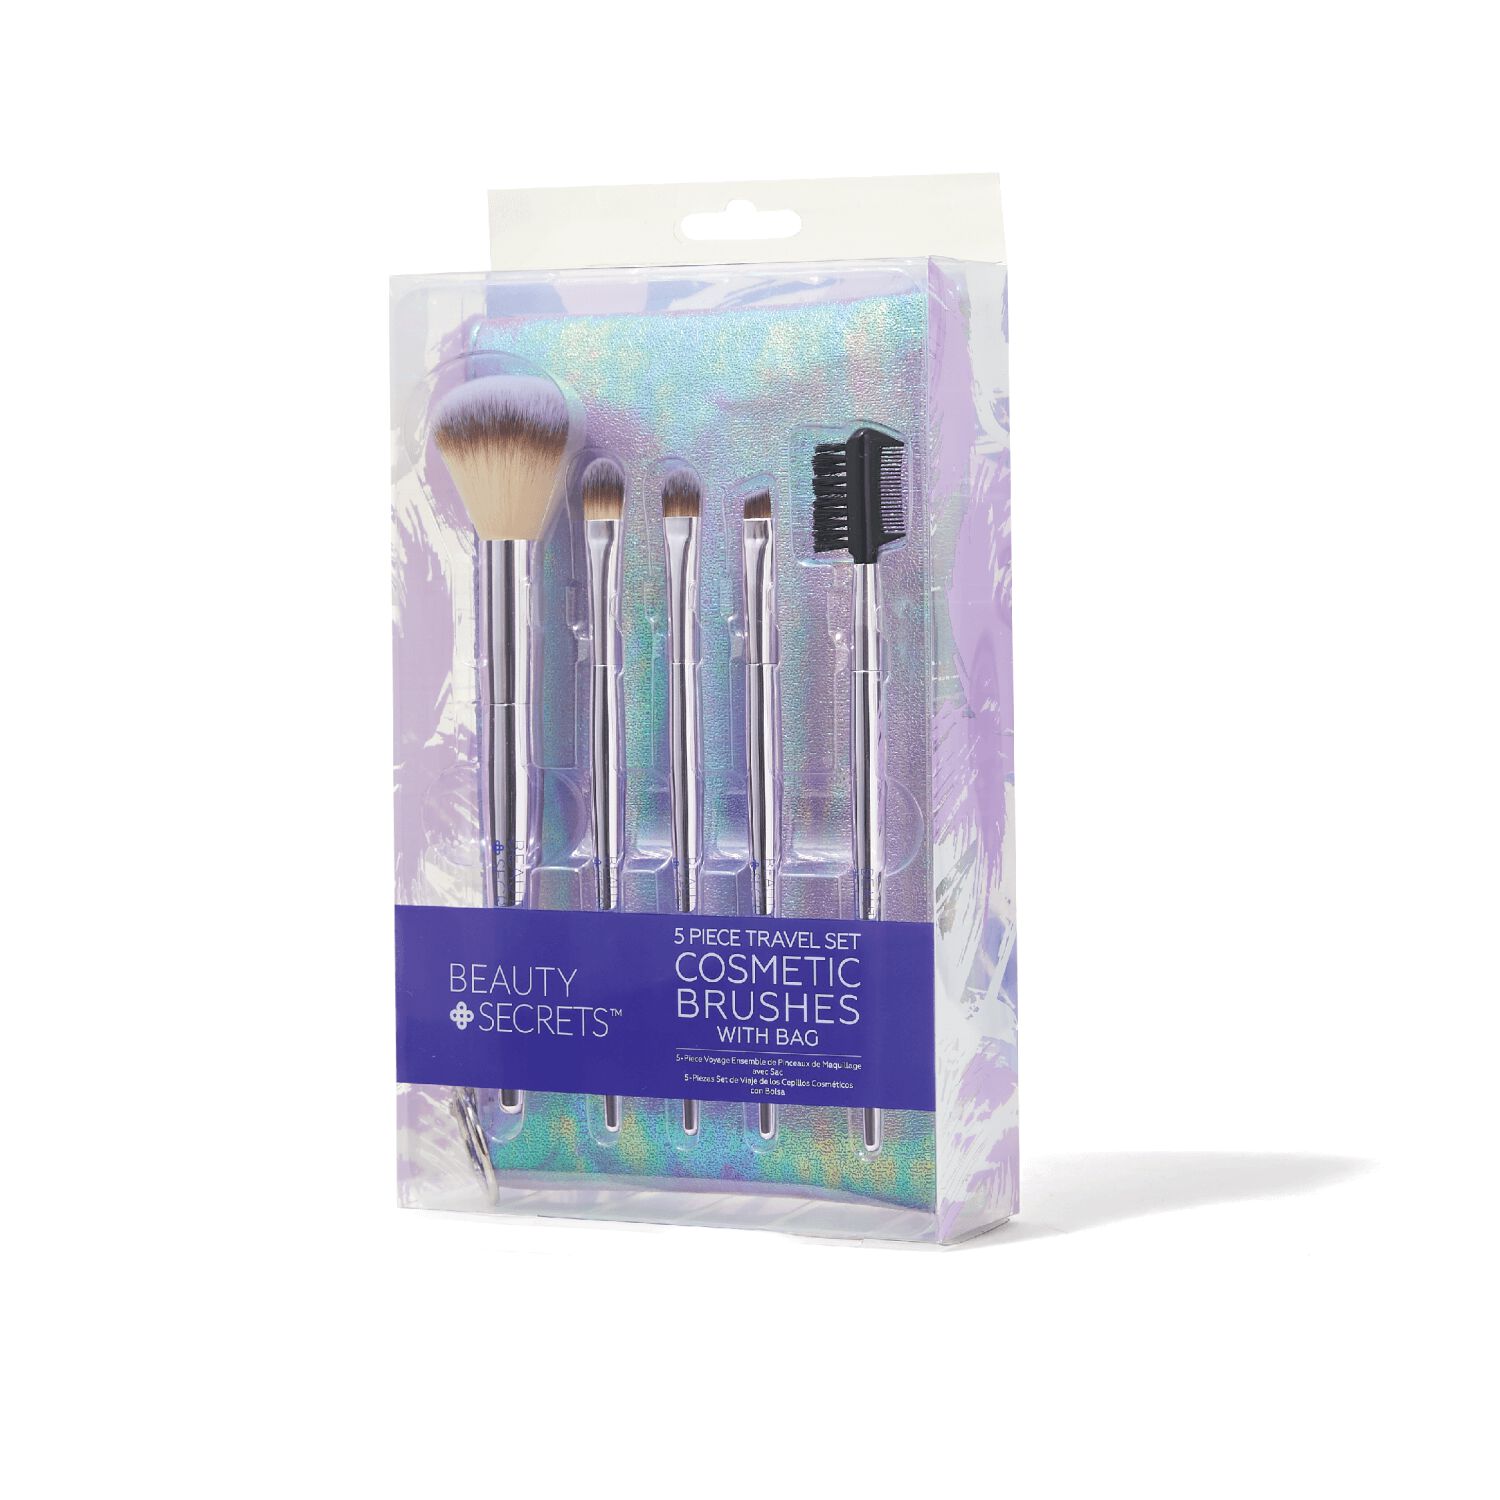 5 piece travel makeup brush set